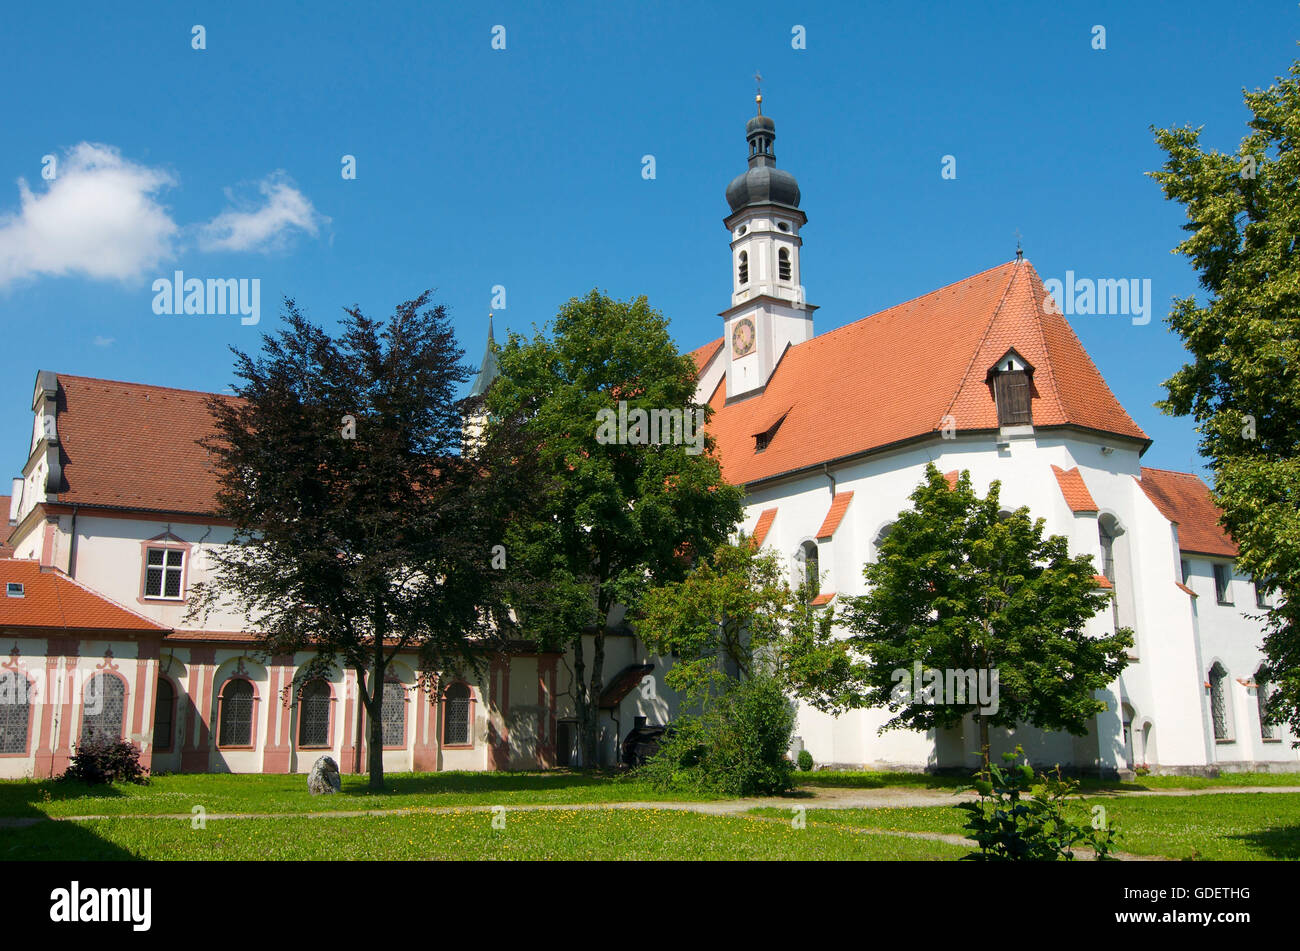 The Carthusian monastery in Buxheim, Allgaeu, Bavaria, Germany Stock Photo